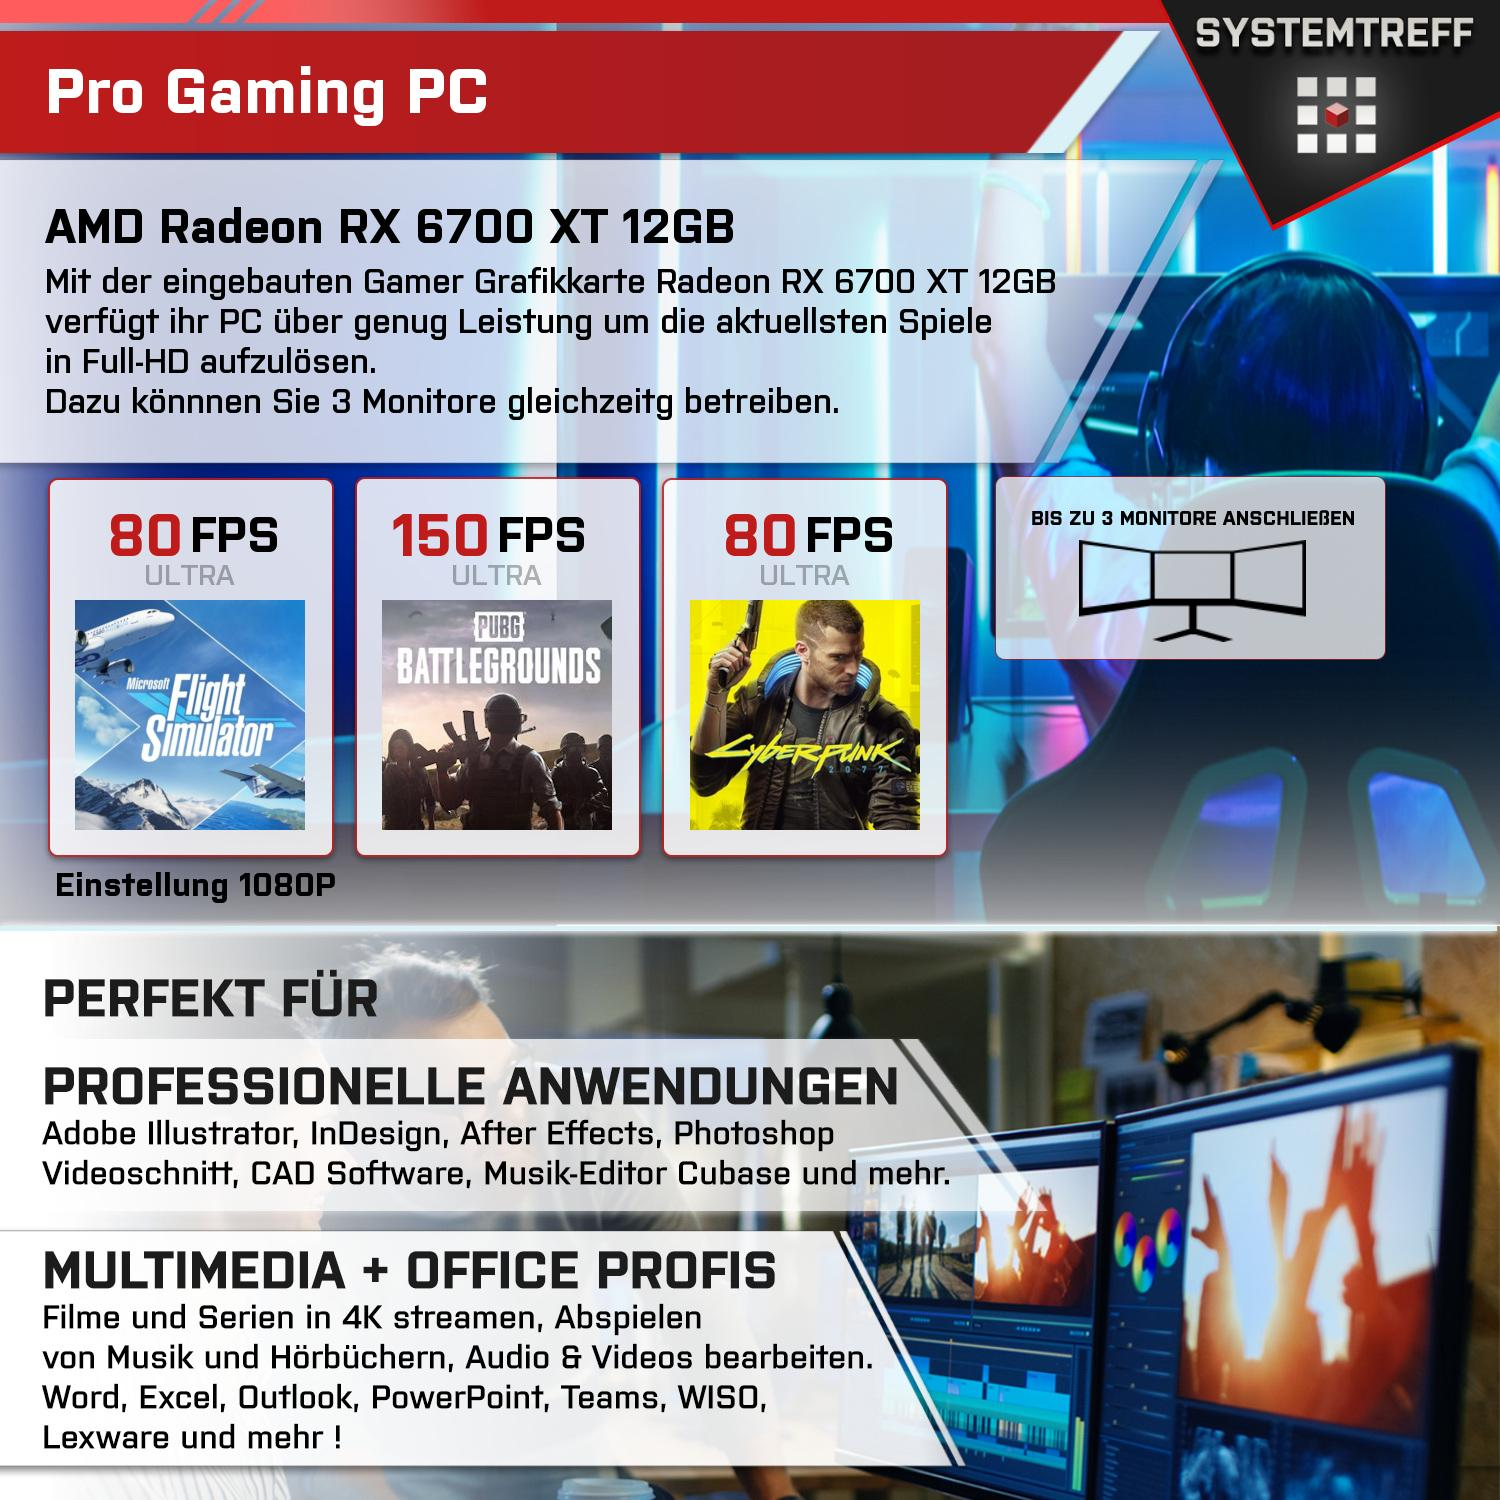 SYSTEMTREFF Gaming Komplett XT GB Core 12 i9-11900K, mSSD, Radeon 1000 12GB PC GB GDDR6, Komplett 32 RX 6700 mit AMD GB RAM, Intel Prozessor, i9-11900K